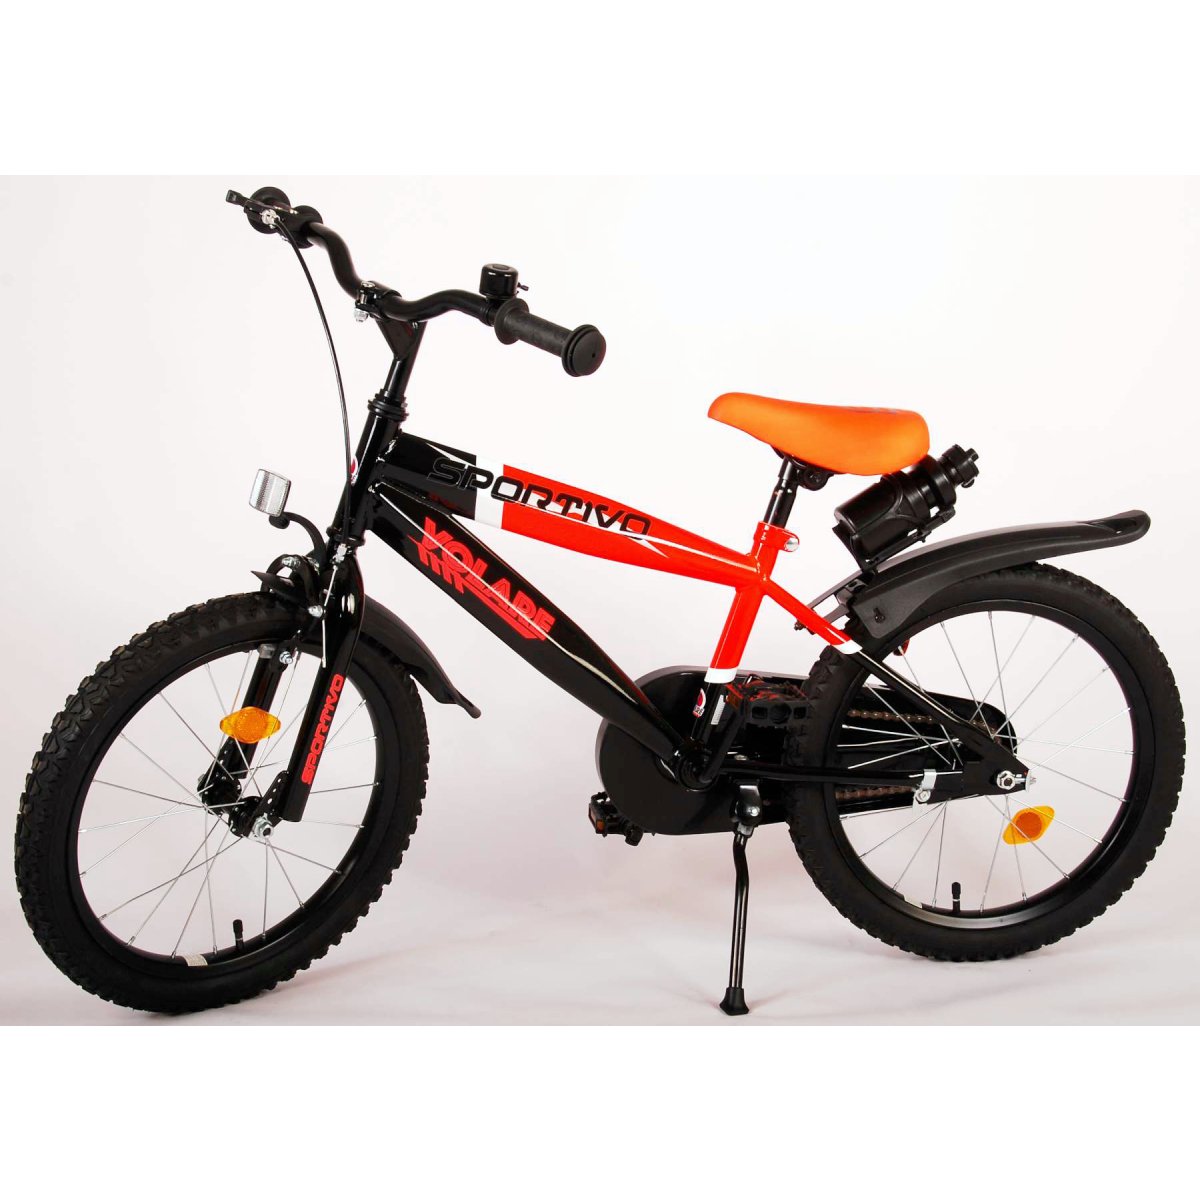 Vaikiškas dviratis VOLARE Sportivo, 18 dydis, juodas/oranžinis - 2